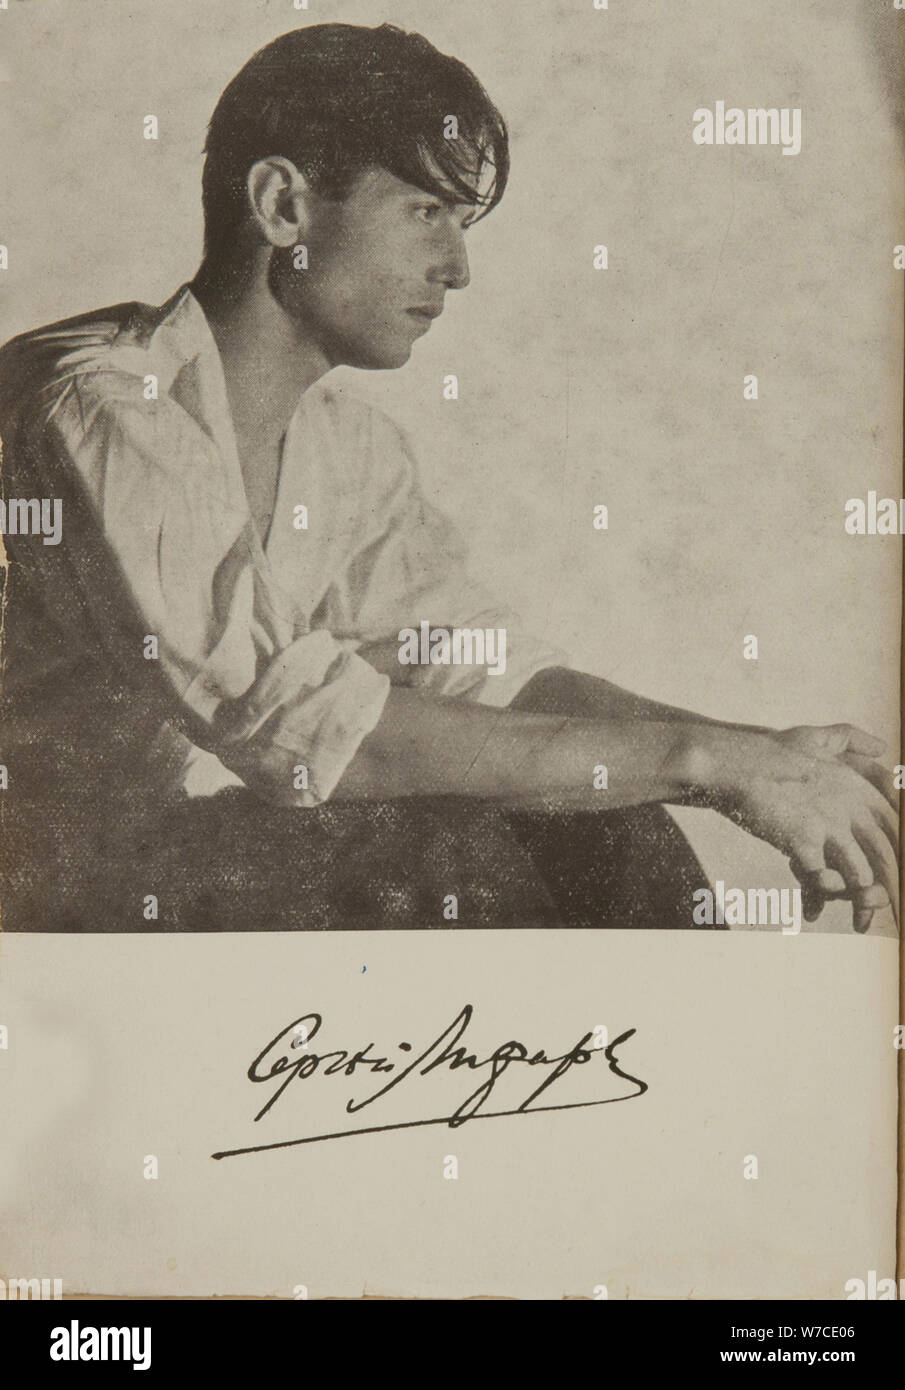 Portrait der Tänzer und Choreograph Sergej Lifar (1905-1986). Stockfoto